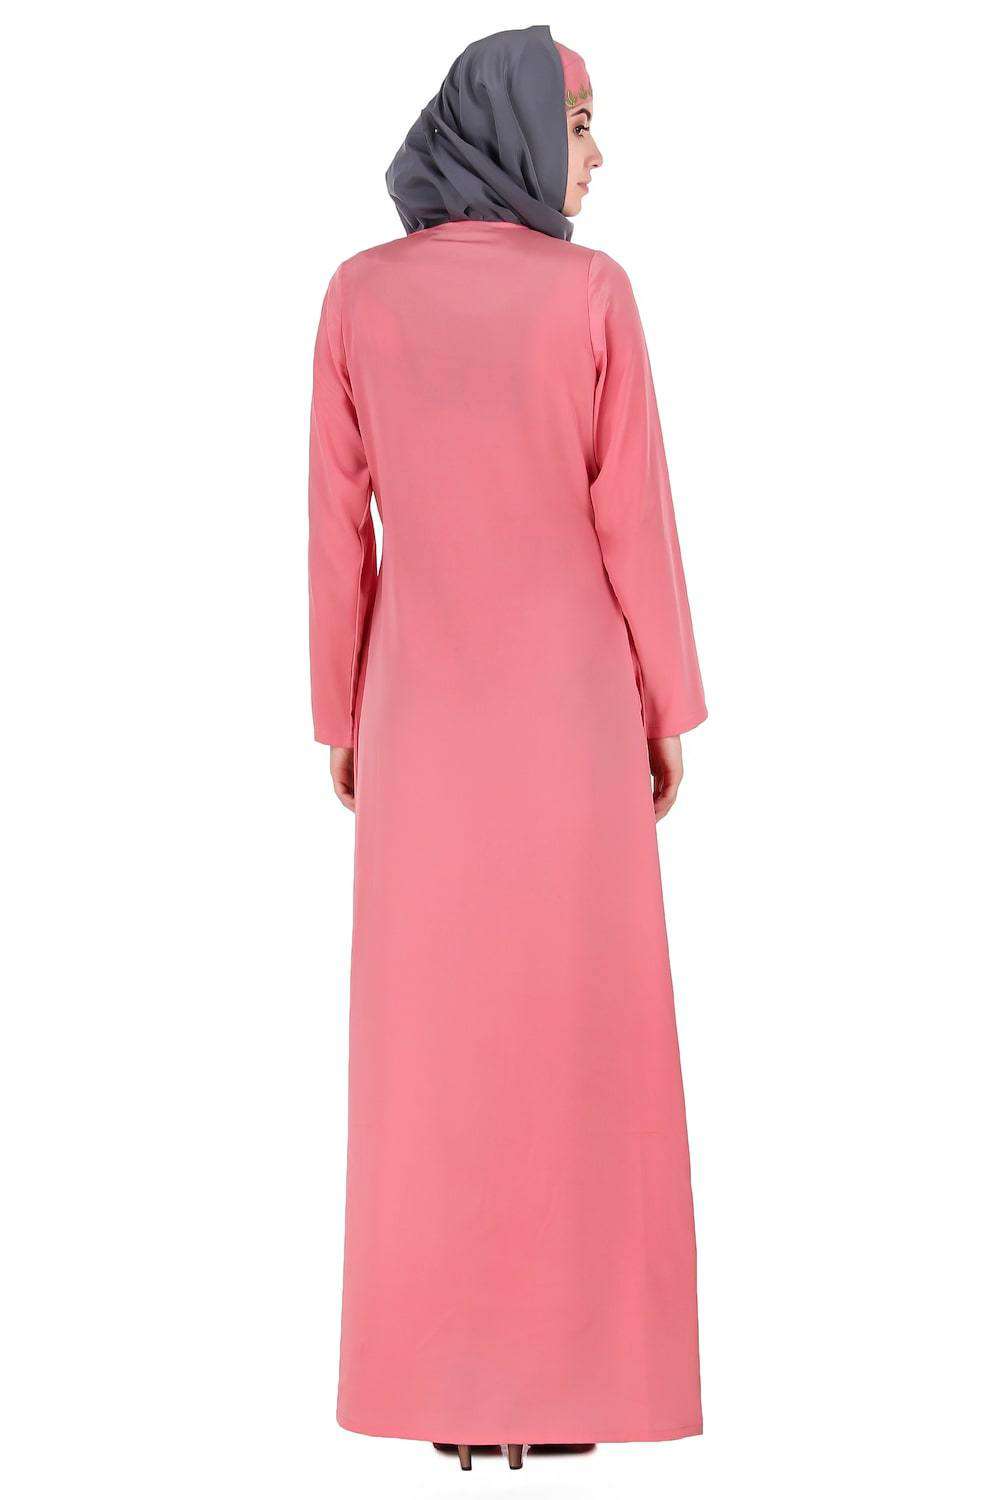 Dusty Pink Front Open Embellished Abaya Back